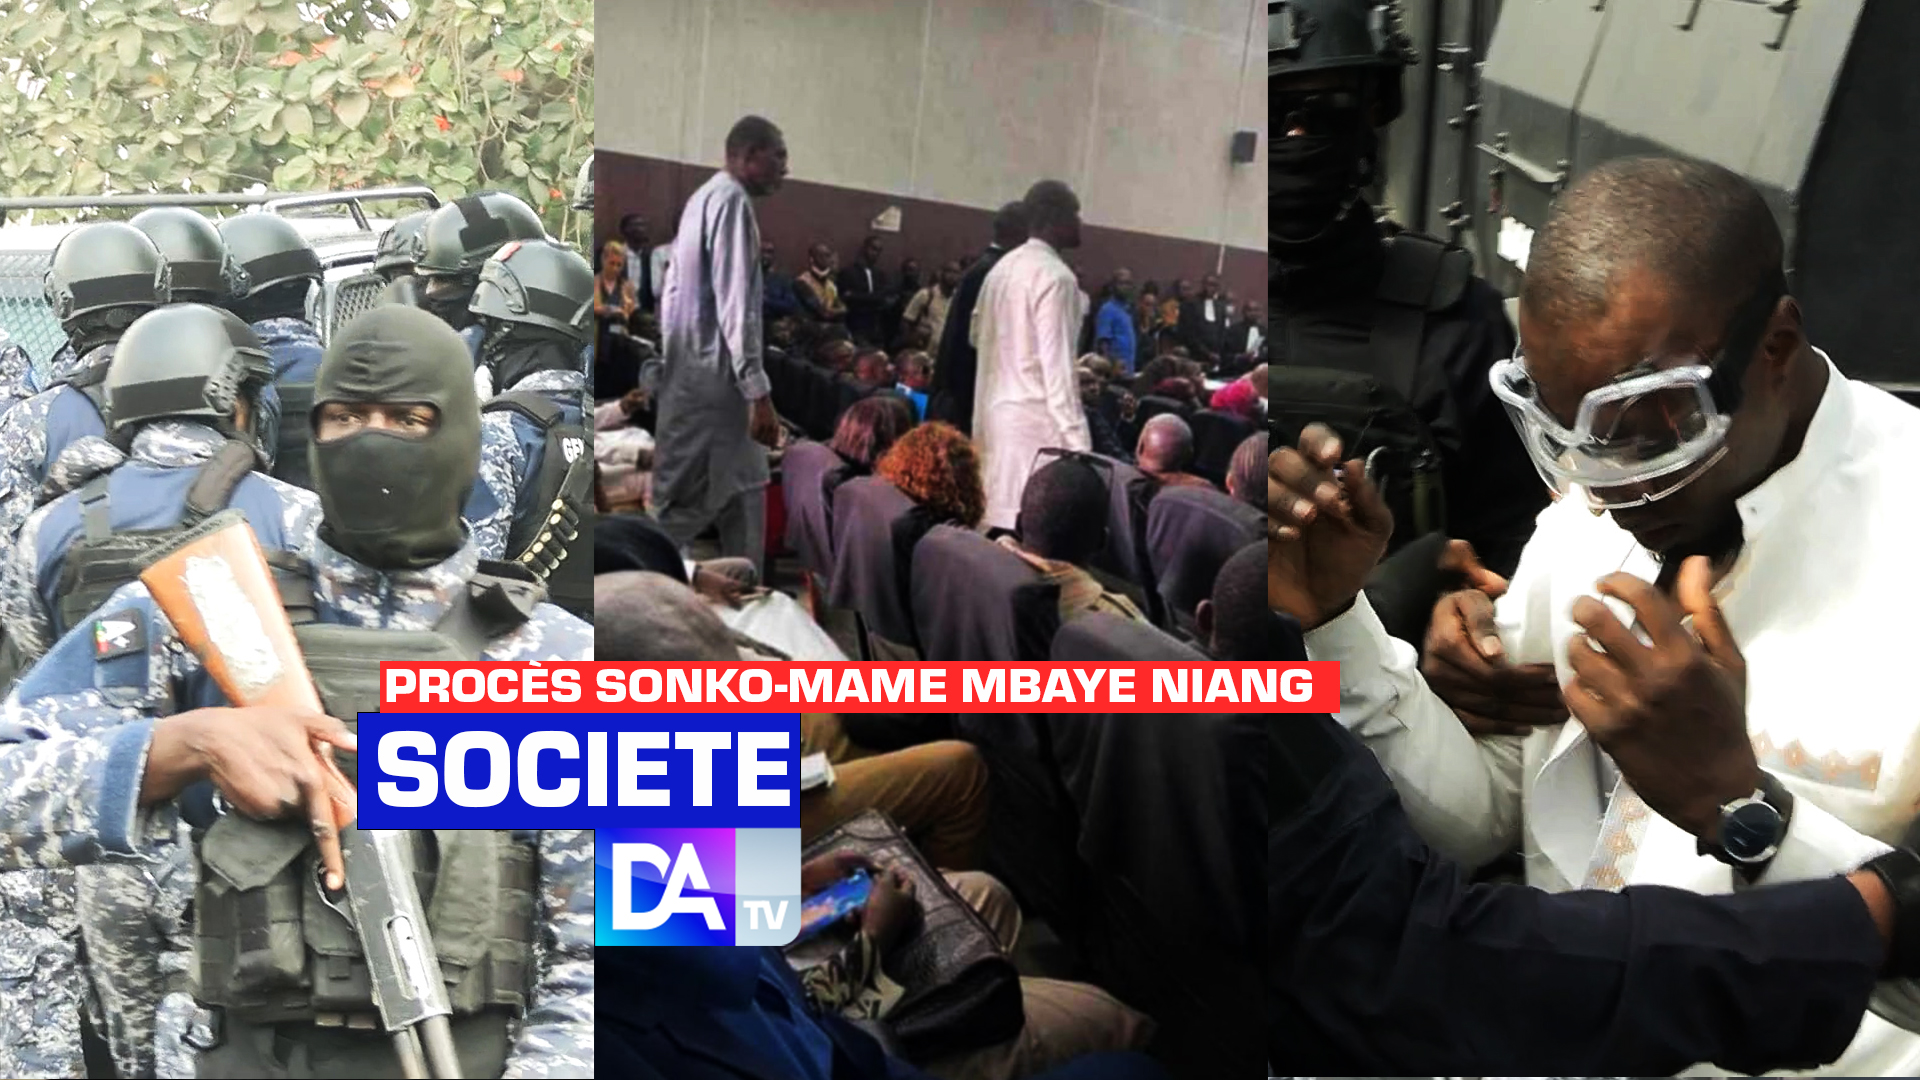 Procès Sonko-Mame Mbaye Niang : un procès sous haute tension rythmé par une guérilla urbaine